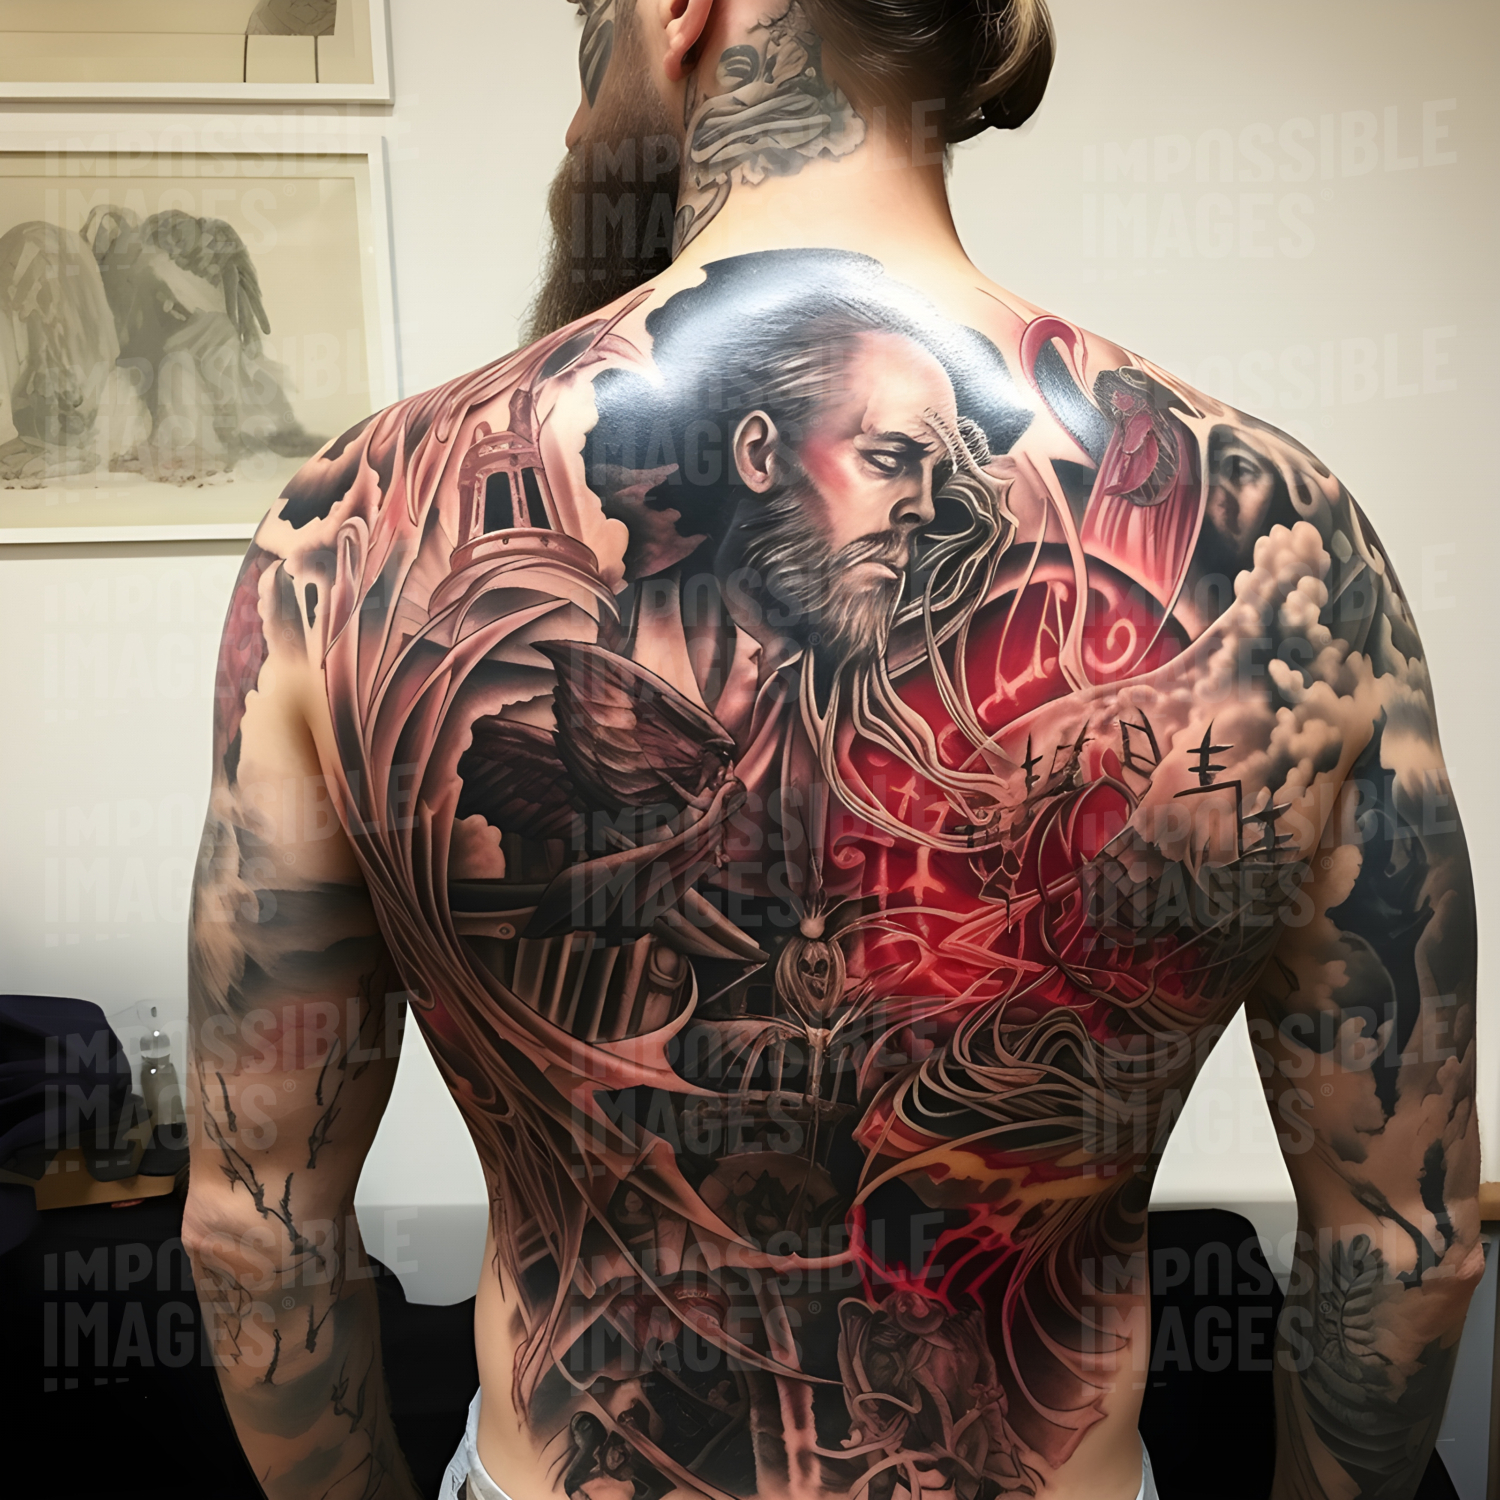 Super intricate tattoo covering a man's back